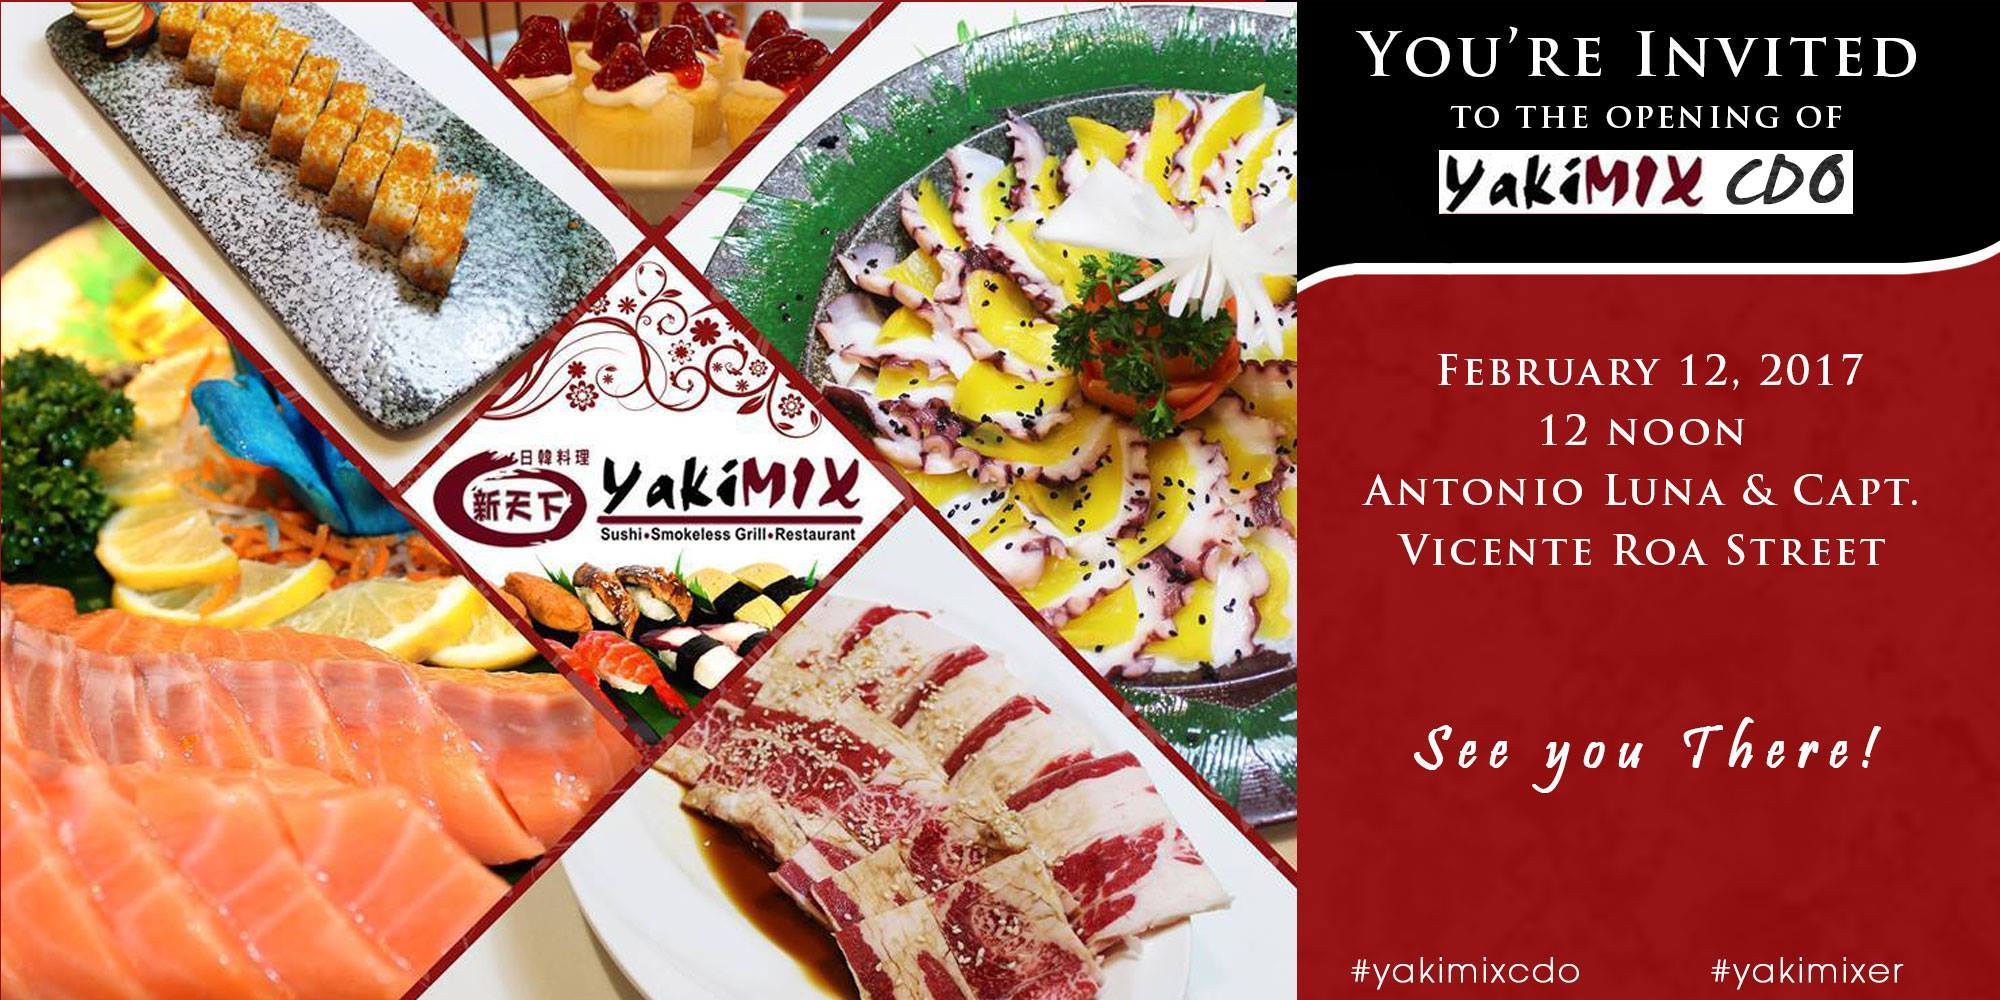 UPDATE: Yakimix CDO sushi and smokeless grill restaurant opening